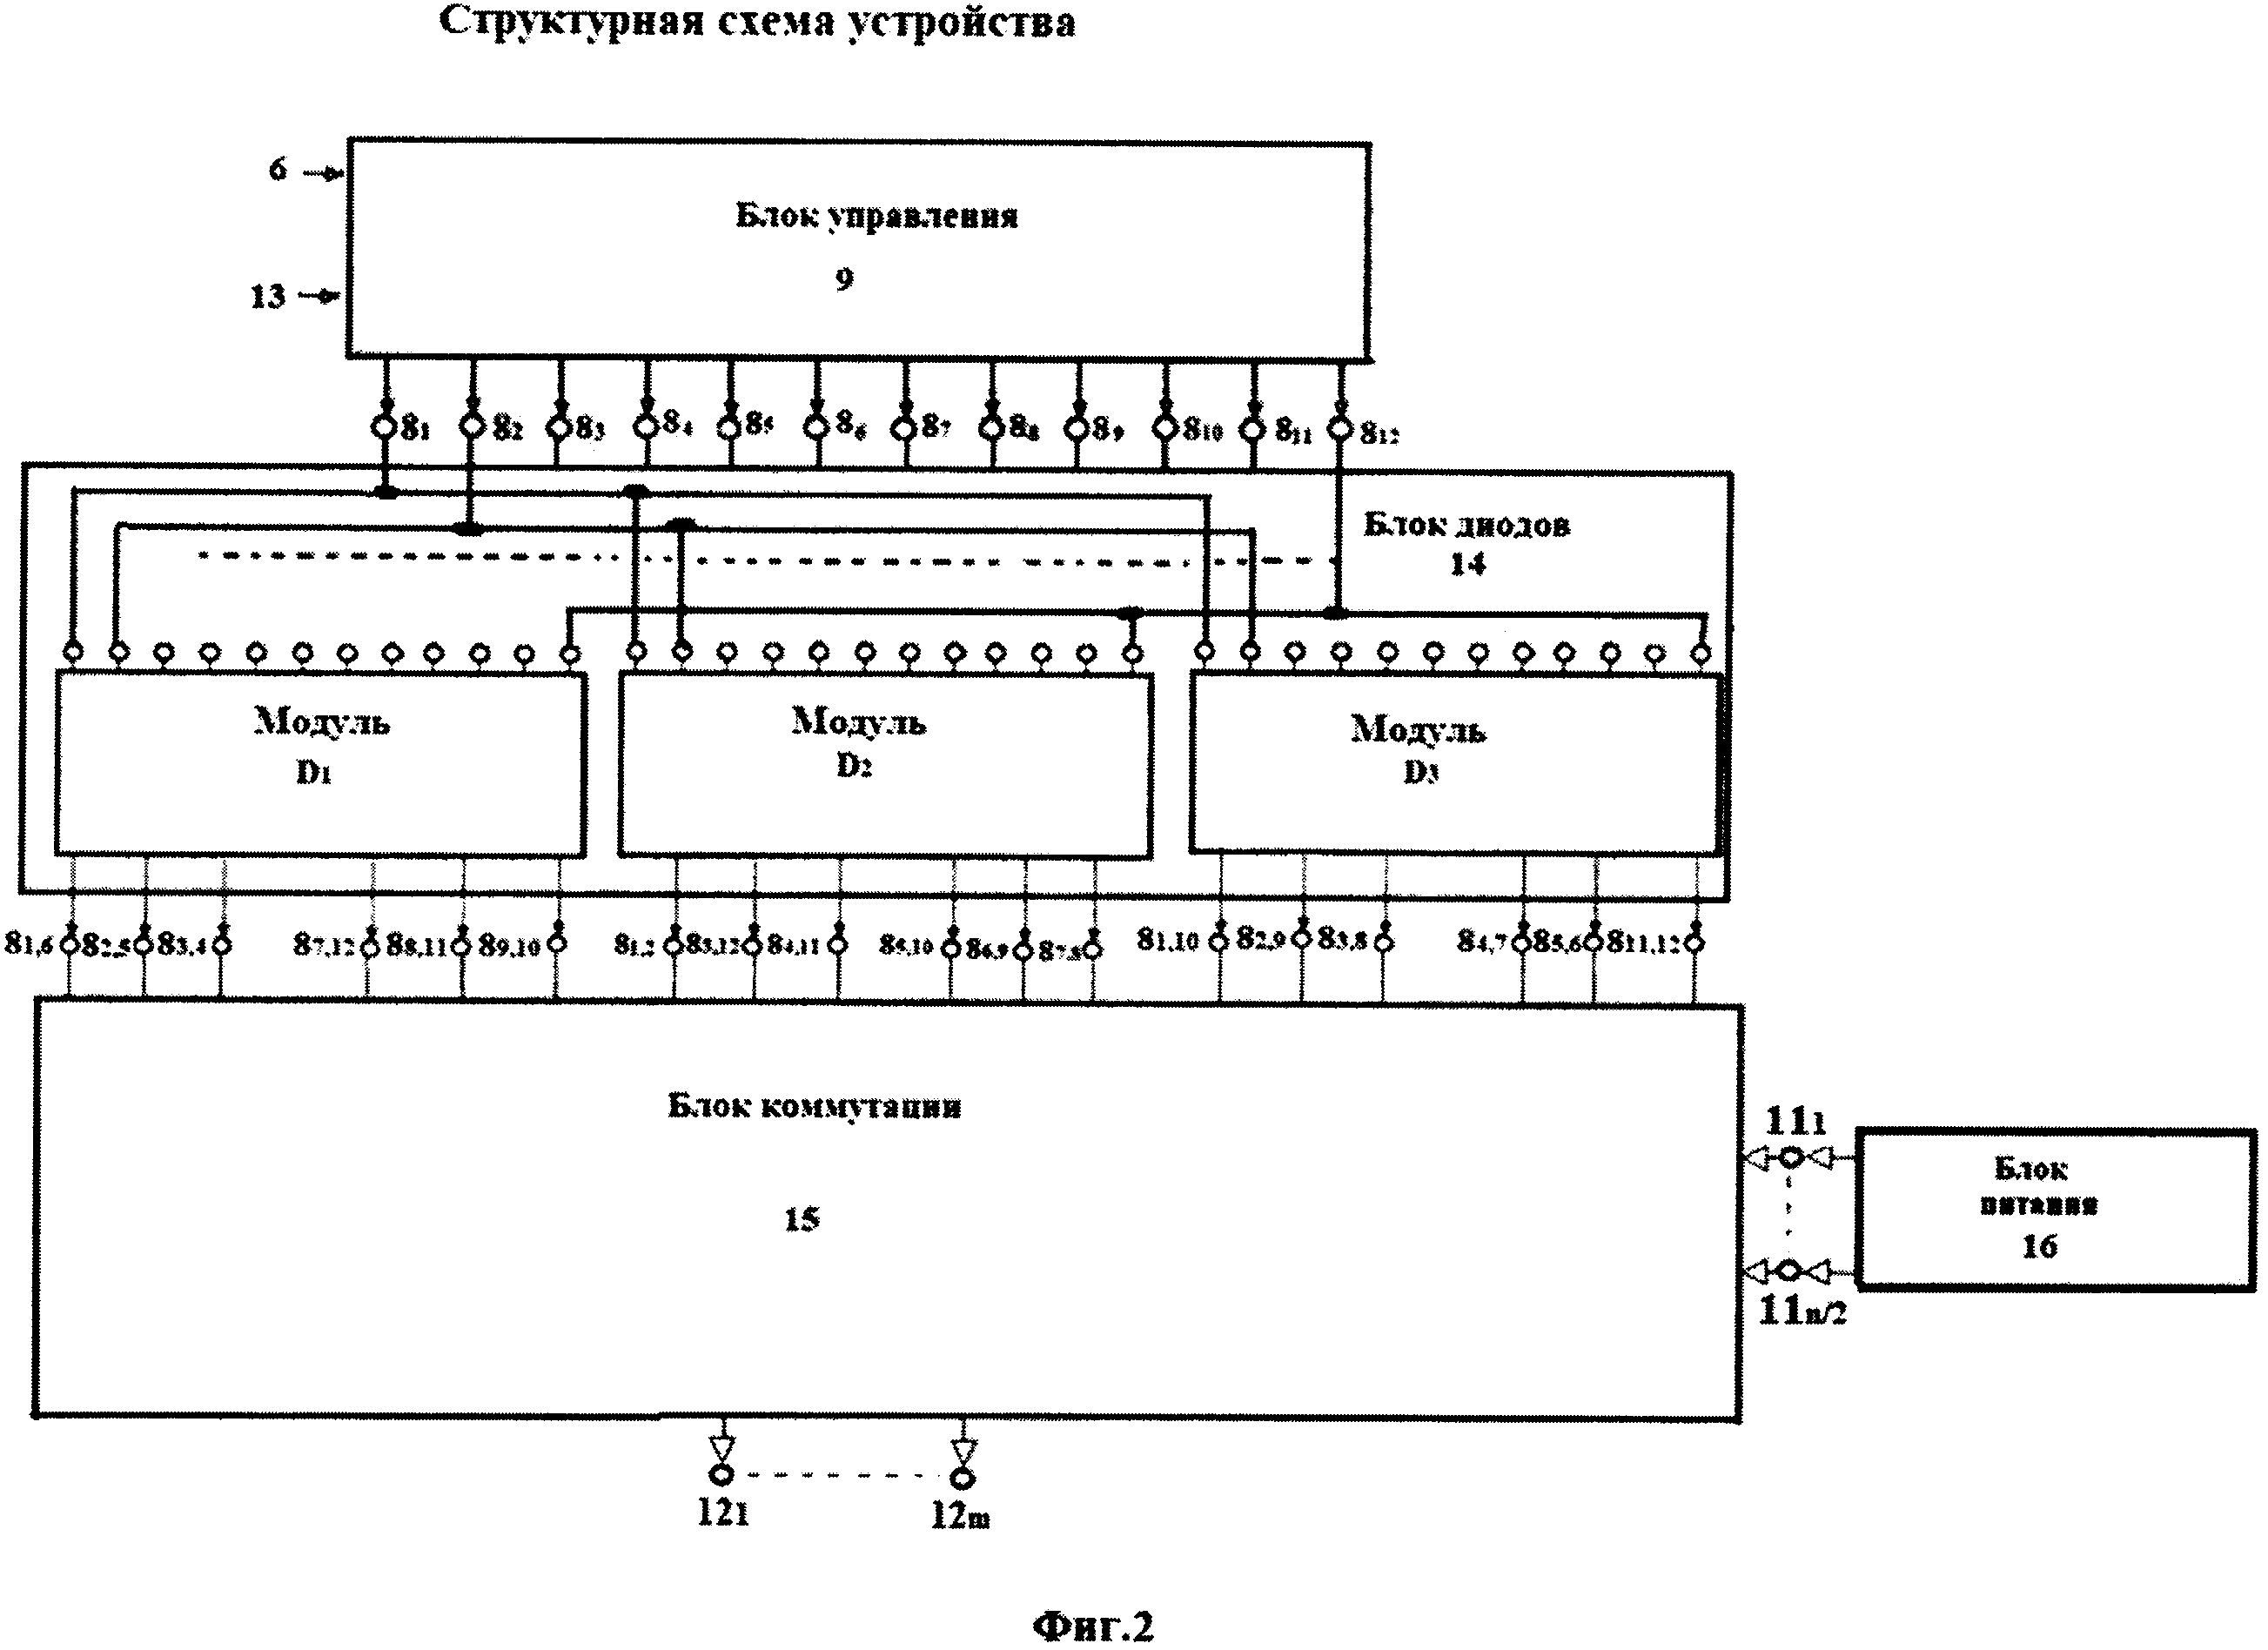 Генератор многофазной системы ЭДС с использованием блока диодов для сокращения в два раза числа силовых ключей